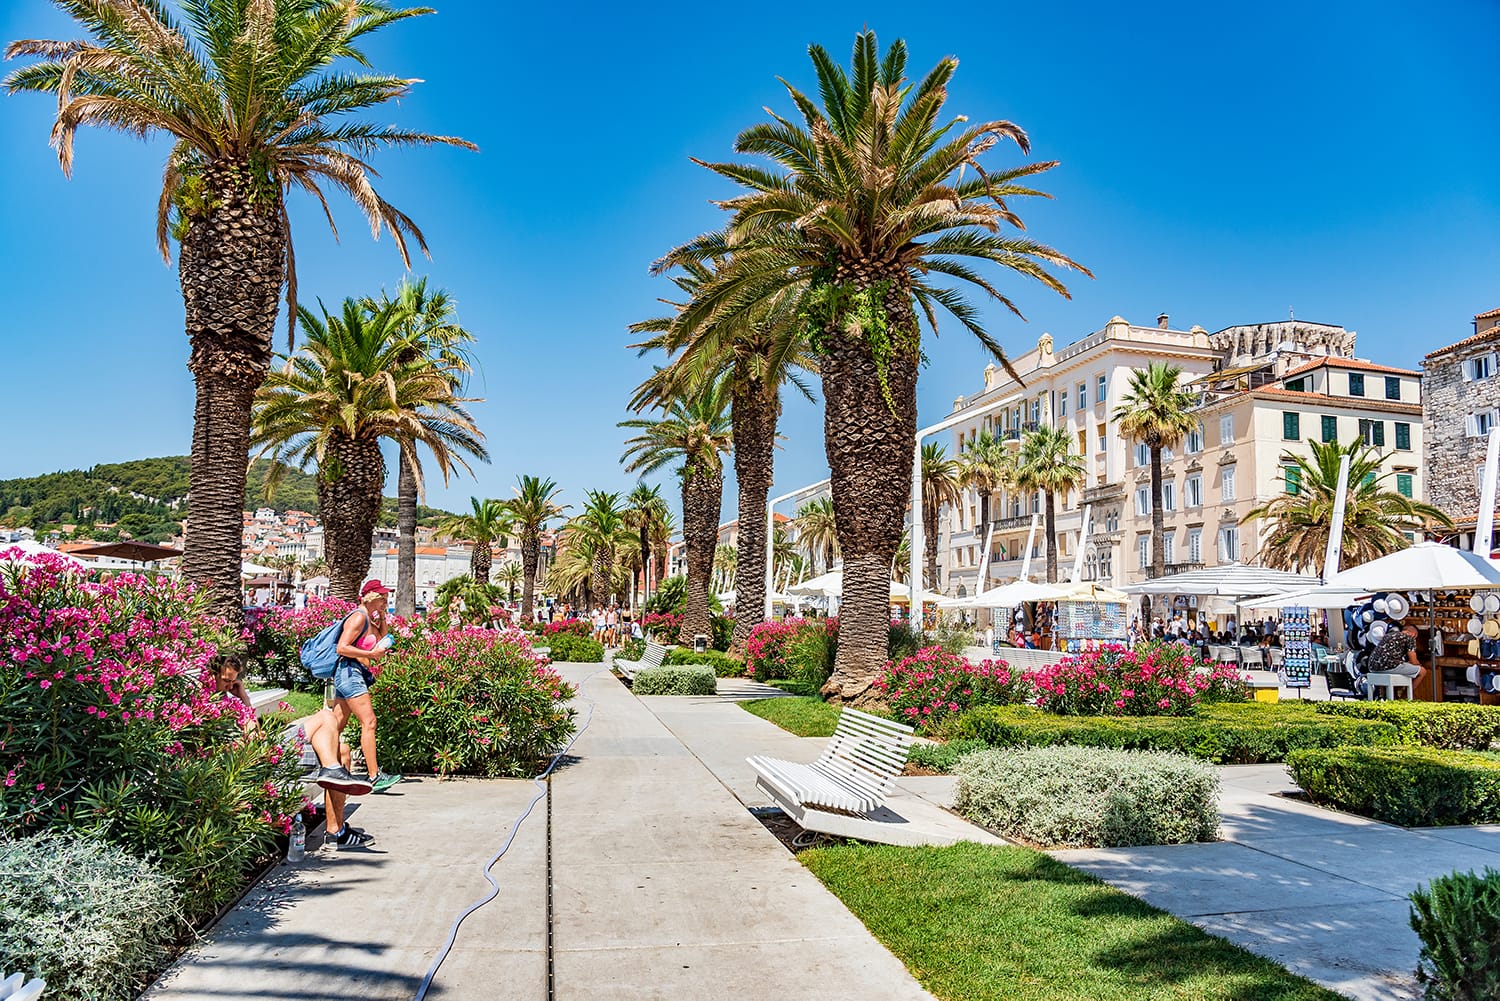 Riva promenade in Split, Croatia